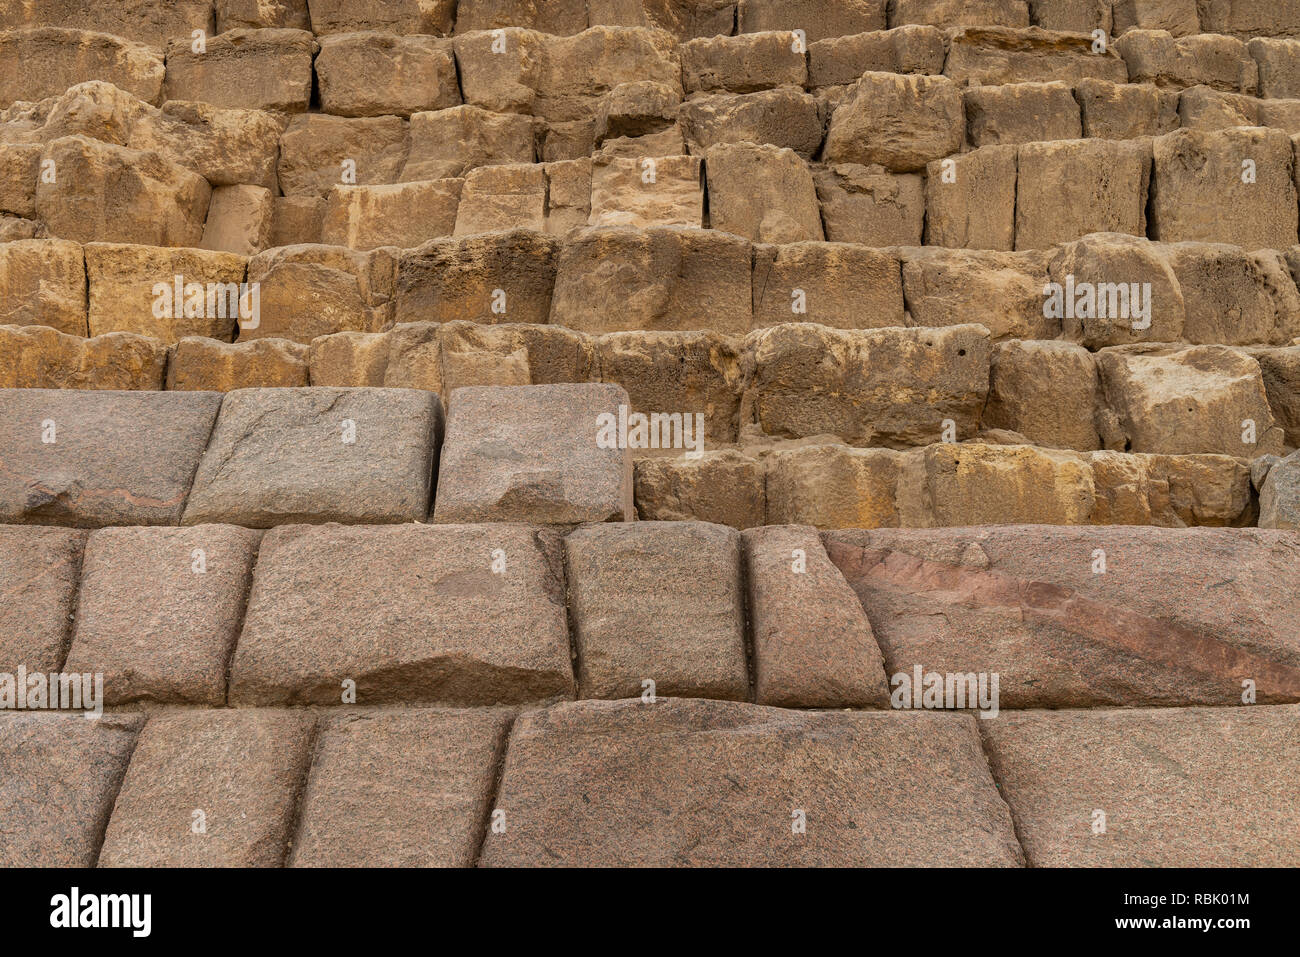 La pyramide de Menkaourê est la plus petite des trois grandes pyramides de Gizeh, situé sur le plateau de Gizeh dans le sud-ouest de banlieue du Caire, Égypte. Banque D'Images